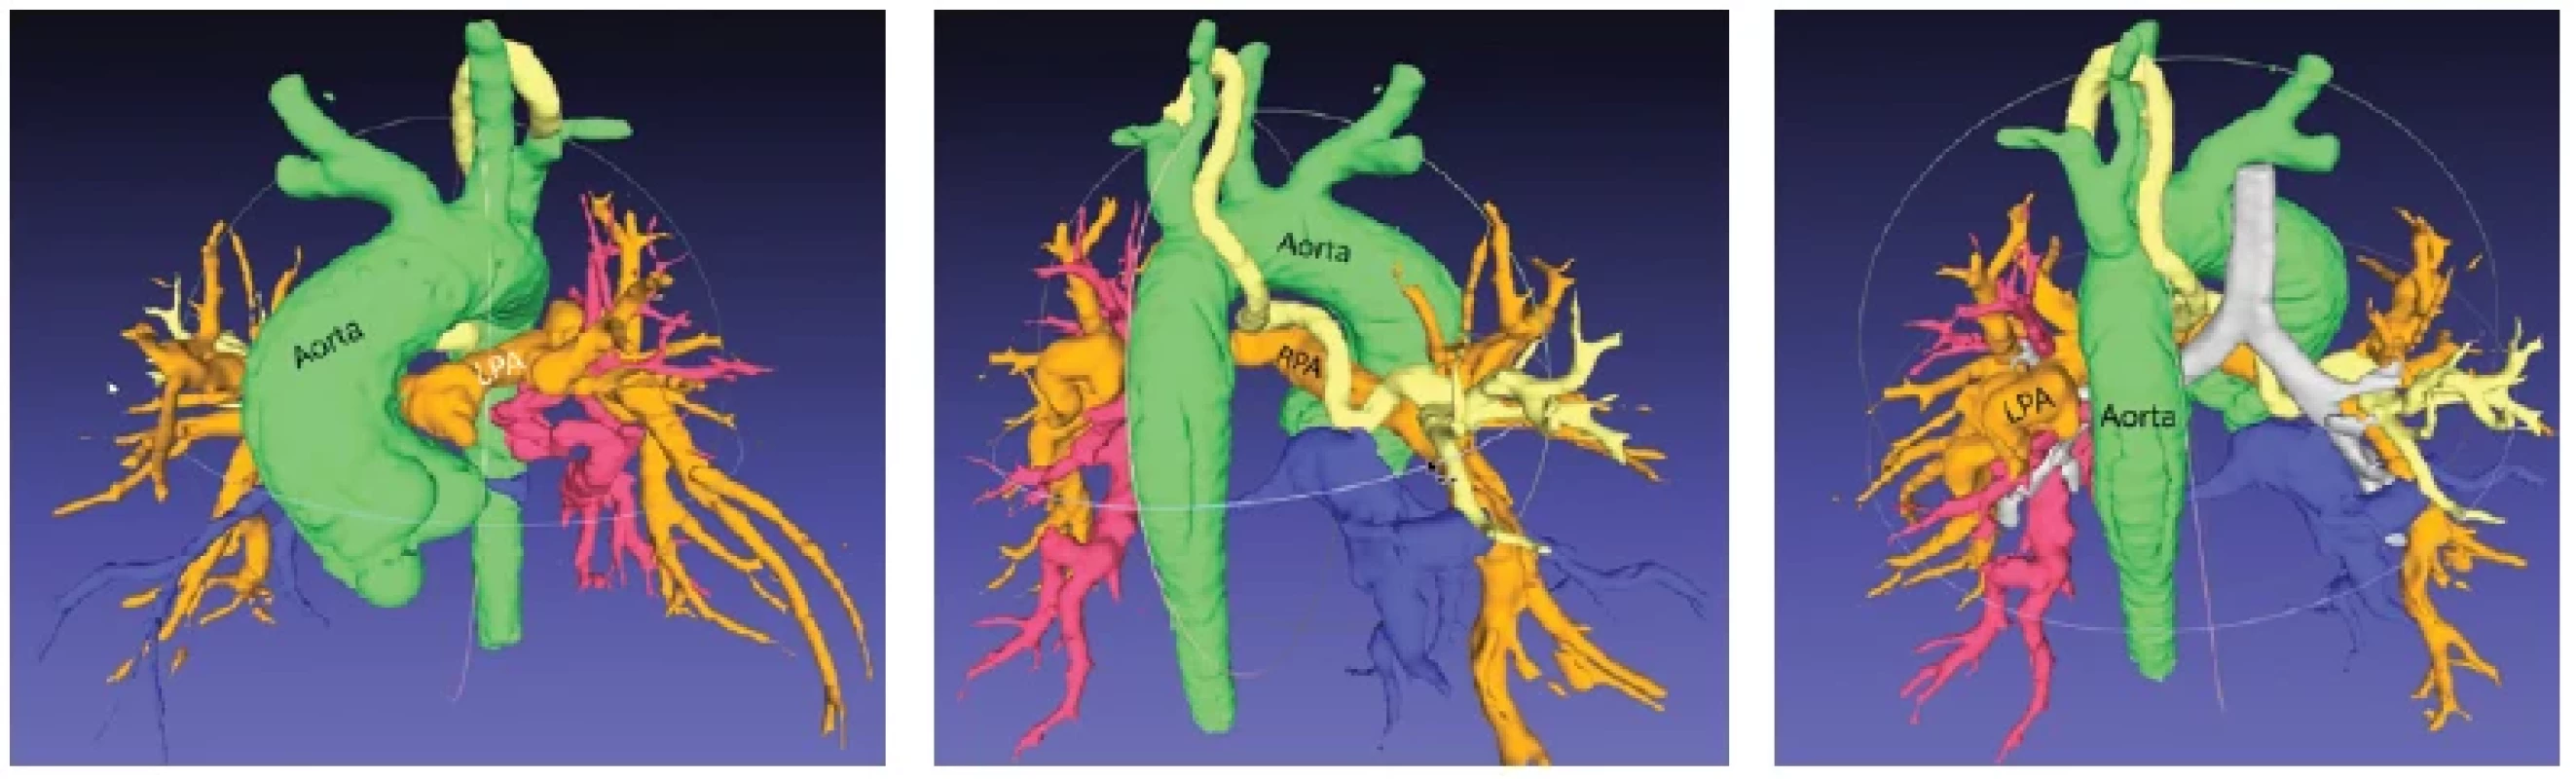 3D virtuálny „odliatkový“ model extrakardiálnych cievnych štruktúr u 8-mesačného pacienta s natívnou VCC: atrézia pľúcnice
s defektom komorového septa a mnohopočetnými aortopulmonálnymi kolaterálami (MAPCAs). Oranžové cievy predstavujú natívne ramená
pľúcnice s minimálnym atretickým kmeňom. Žltá, modrá a červená cieva predstavuje jednotlivé MAPCAs. Pohľadmi z rôznych perspektív je
možné hodnotiť: ich odstupy z aorty / priebehy / prítomnosť stenóz v ich priebehu / pľúcne segmenty, ktoré jednotlivé MAPCAs zásobujú /
či sa spájajú s natívnymi ramenami pľúcnice. Žltá kolaterála nekomunikuje s ramenami pľúcnice. Červená kolaterála komunikuje s natívnym
ramenom pľúcnice (LPA ). Modrá kolaterála má pri svojom odstupe výraznú stenózu. Na obrázku vpravo je šedou farbou vysegmentovaný aj
tracheobronchiálny strom. Takto je možné definovať, ktoré kolaterály prebiehajú pred / za / nad / pod bronchami, čo je dôležitá informácia
pre kardiochirurga z hľadiska plánovania unifokalizácie týchto kolaterál v rámci operácie. Na základe analýzy 3D modelu bola naplánovaná
kompletná chirurgická korekcia pozostávajúca z uzatvorenia defektu komorového septa, spojenia pravej komory s krátkym kmeňom pľúcnice,
ligácie červenej kolaterály a z pokusu o unifokalizáciu (odpojenie kolaterály z aorty a jej našitie na natívne rameno pľúcnice) žltej a modrej
kolaterály na RPA (pravé rameno pľúcnice). Obrázok vľavo: anteriórny pohľad. Stredný obrázok a obrázok vpravo: posteriórny pohľad.